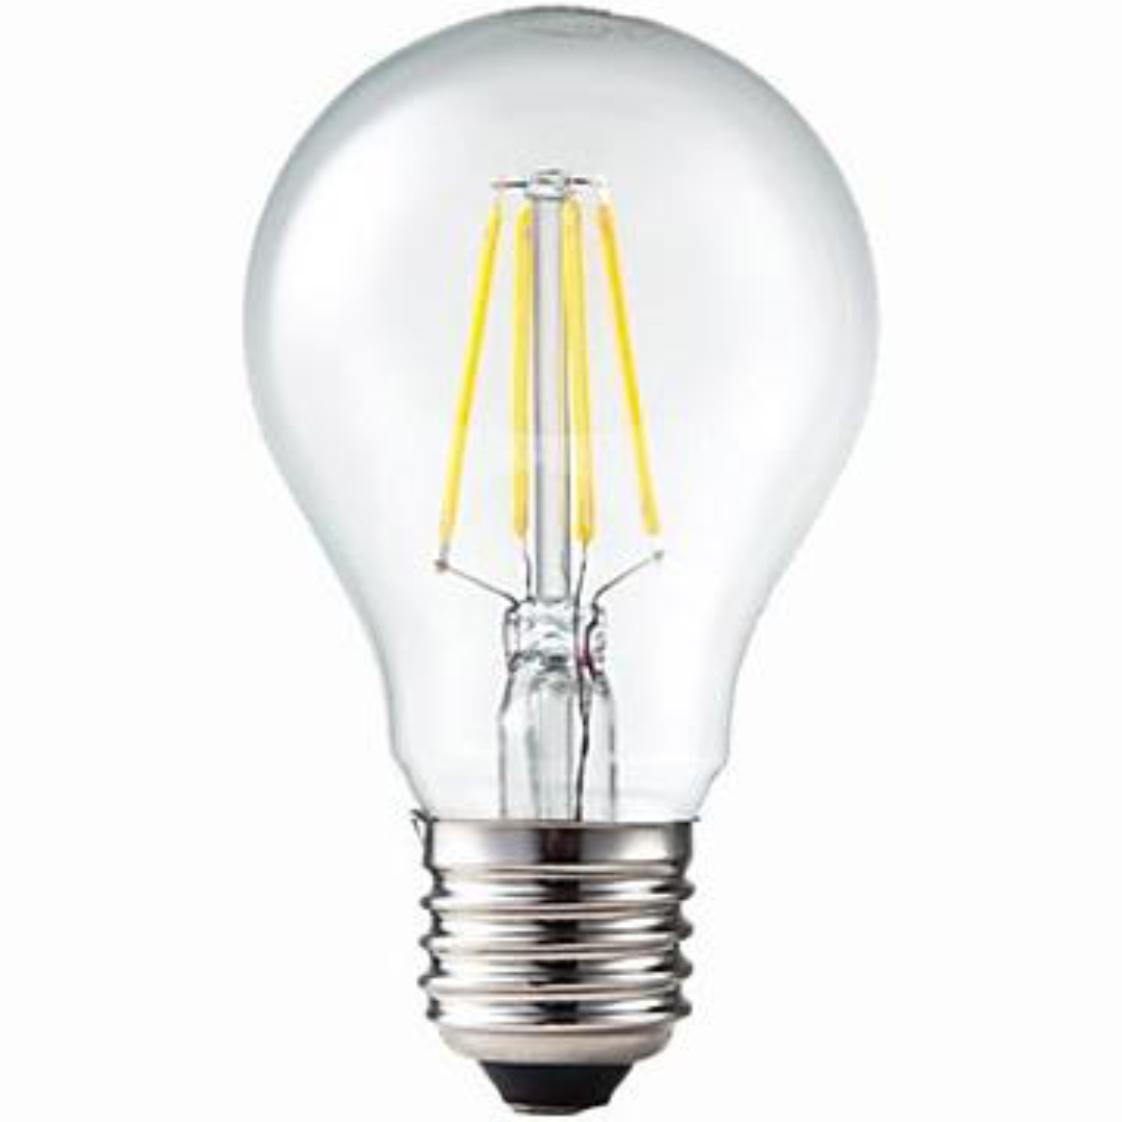 bladeren affix Afscheiden Filament Led Lamp - 800 Lumen - Lamptype: E27 - Led, Vermogen: 7.5 Watt -  230 Volt, Lichtsterkte: 800 lumen, Afmetingen: Ø60mm/H104mm, Lichtkleur:  Extra warm wit - 2700 K.